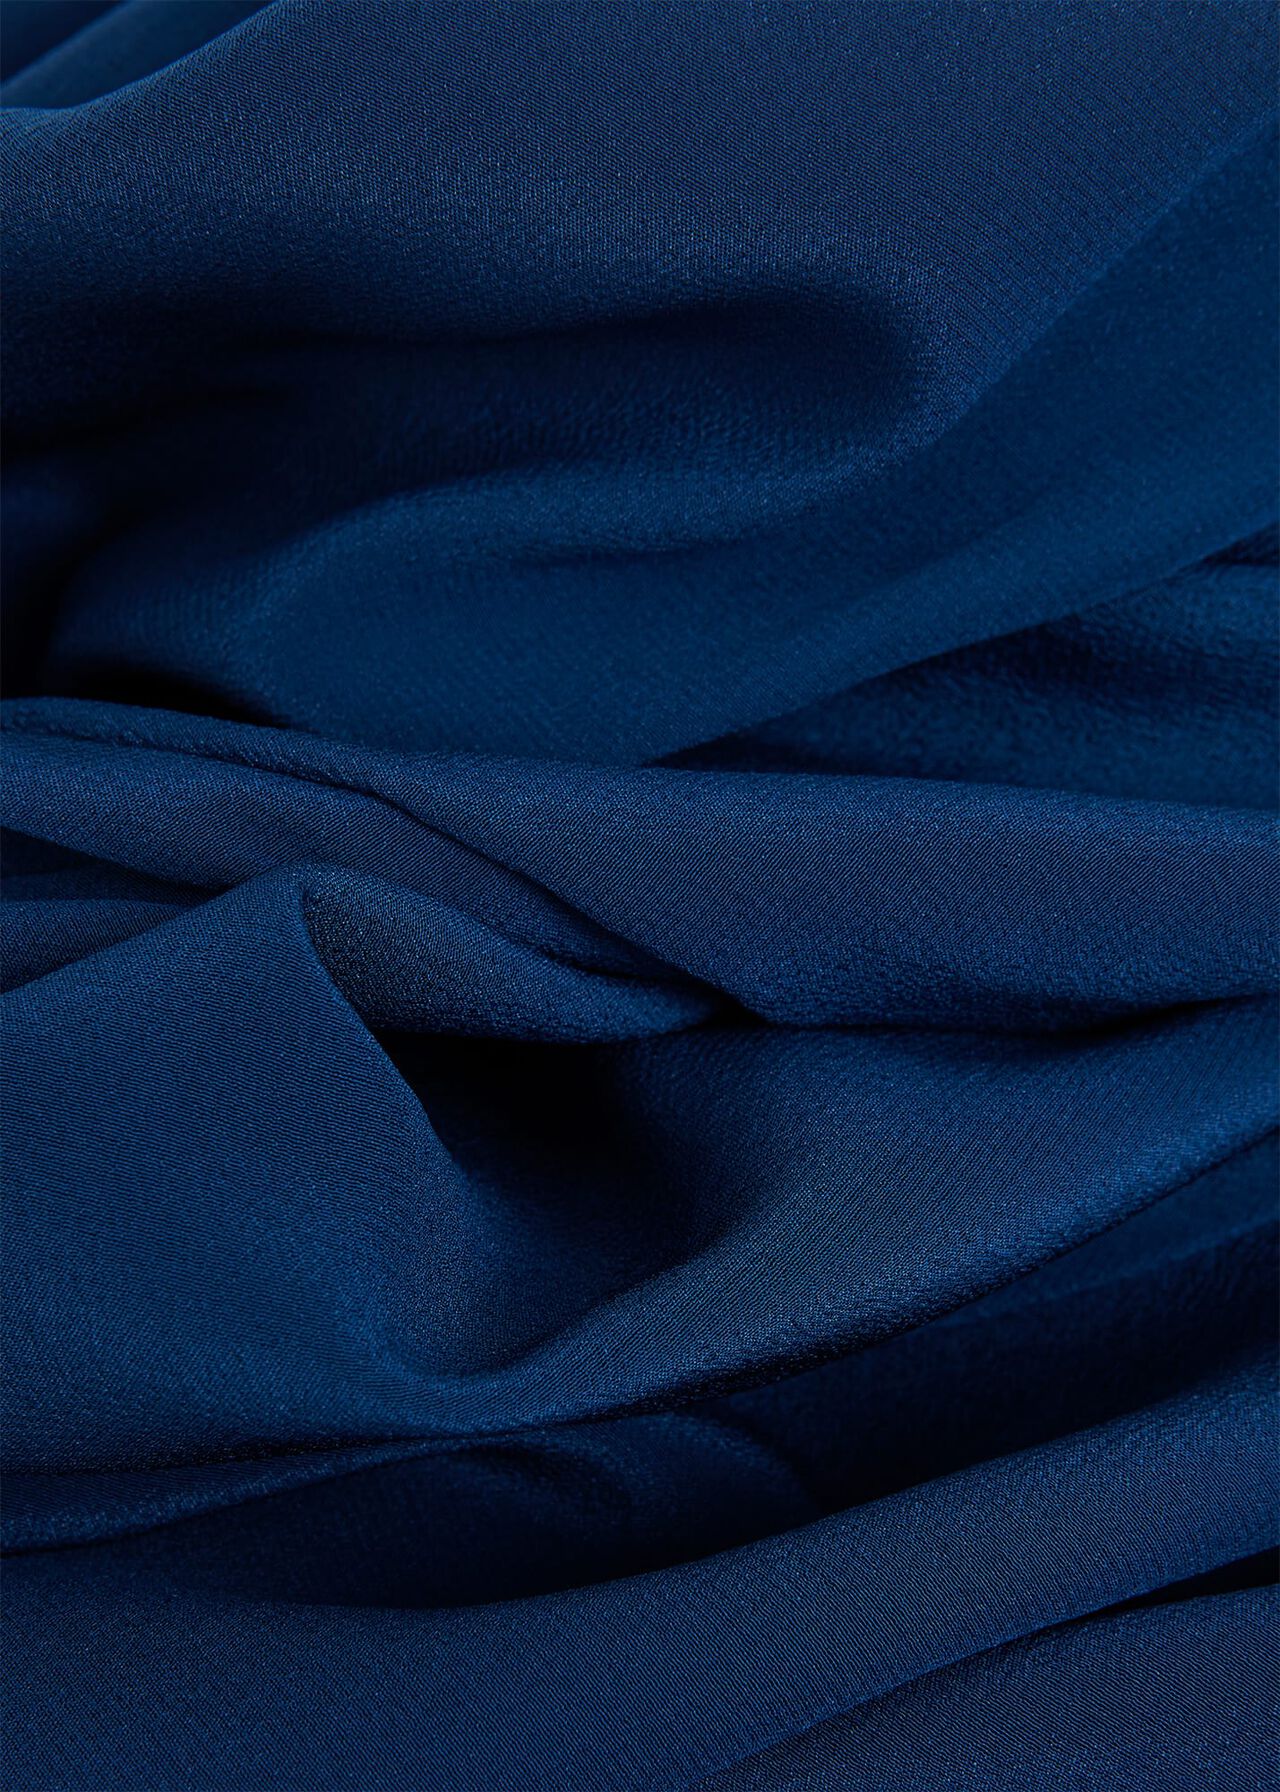 Macey Silk Blouse, Steel Blue, hi-res